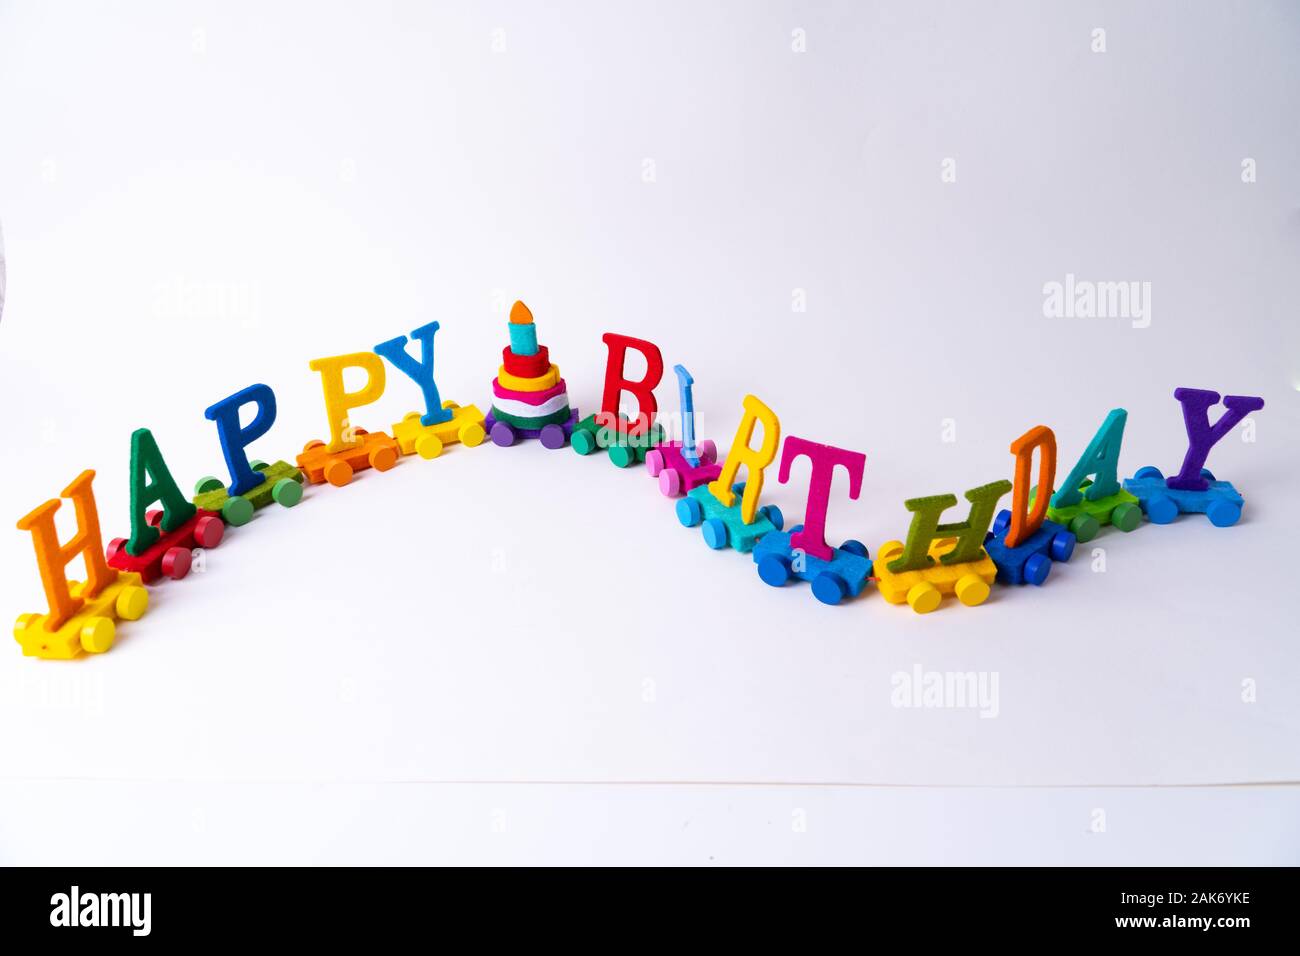 Un train avec le mot 'Happy Birthday' et un gâteau d'anniversaire sur fond blanc Banque D'Images